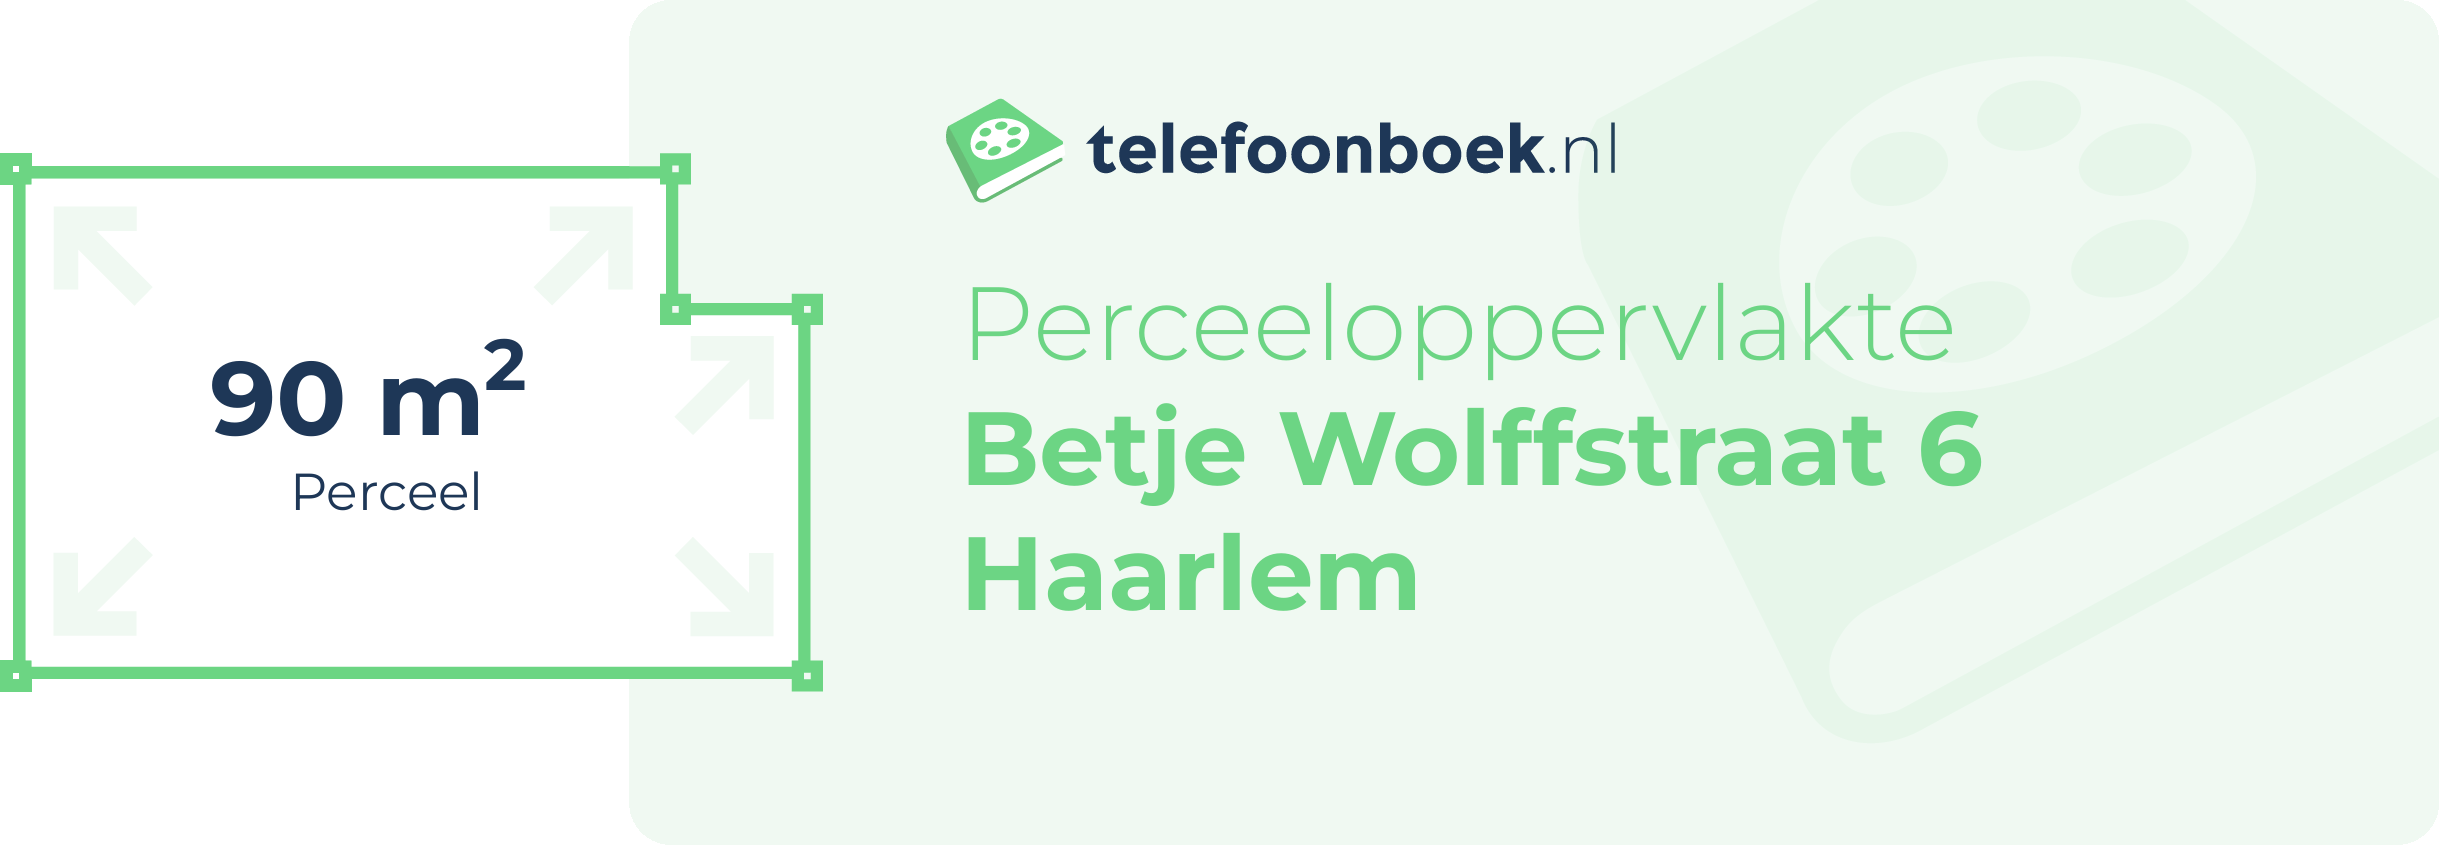 Perceeloppervlakte Betje Wolffstraat 6 Haarlem